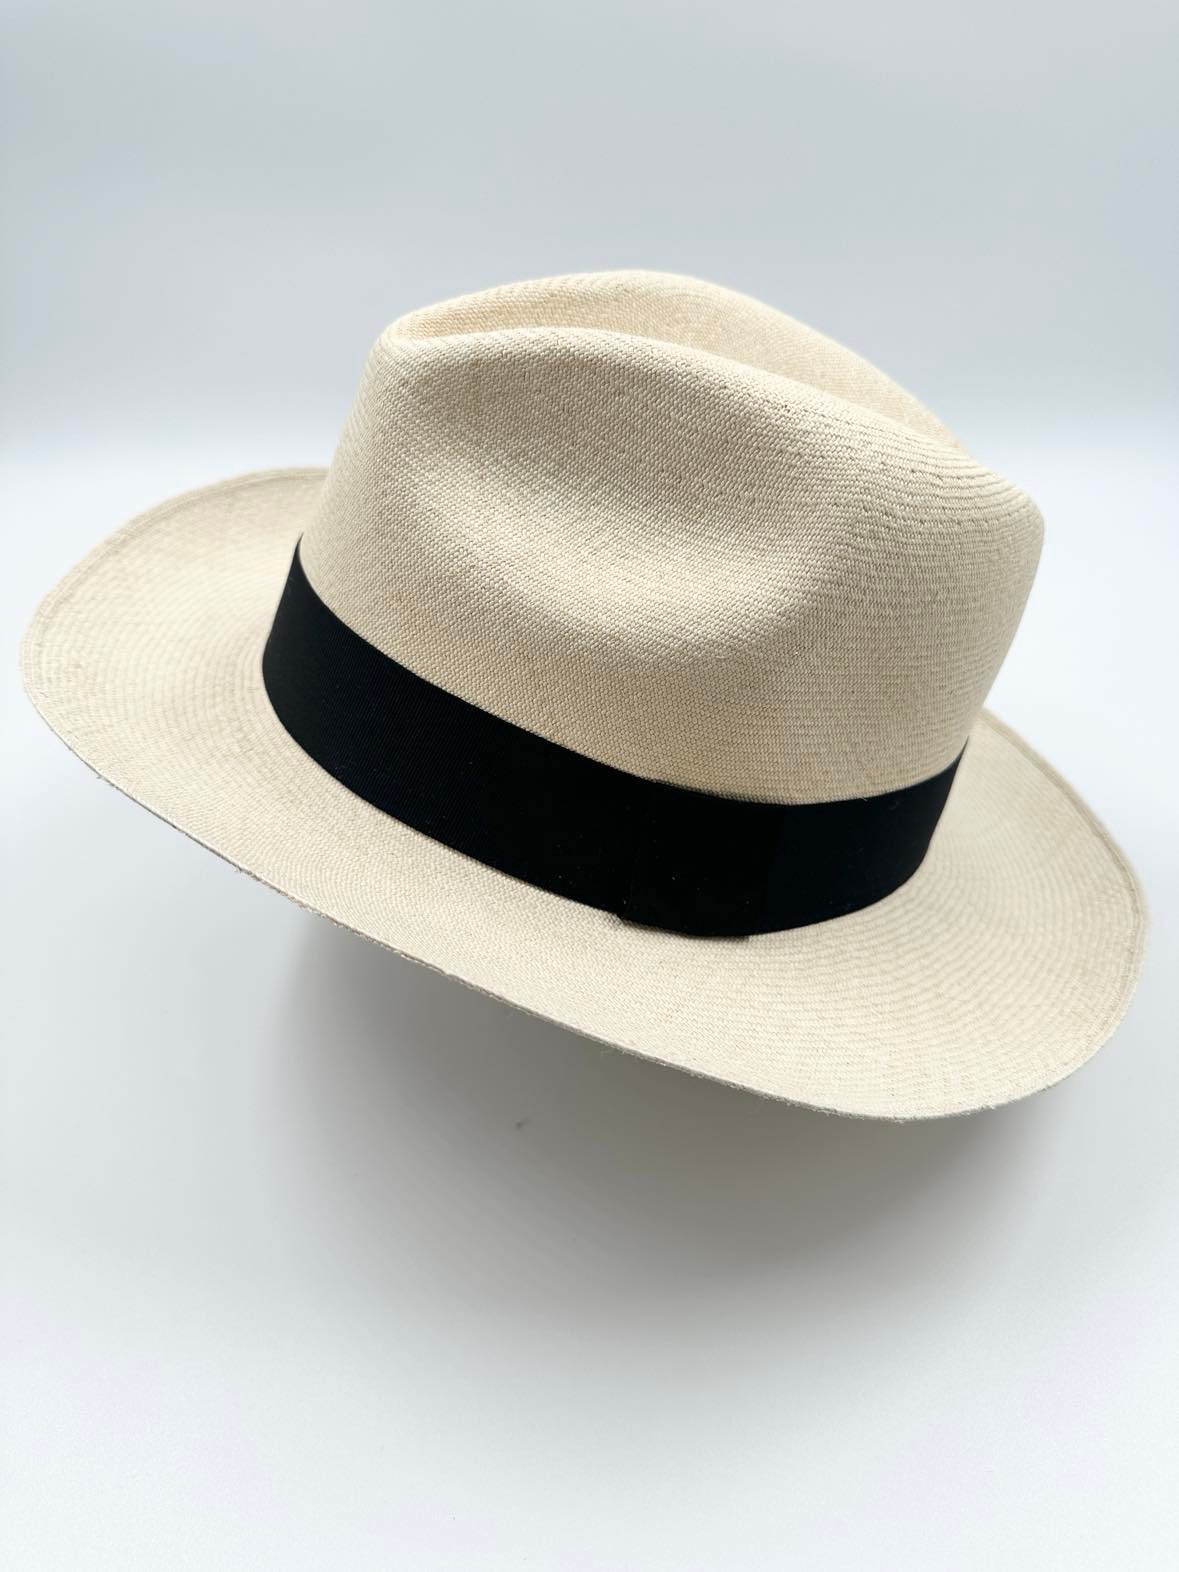 Ægte Montecristi Fedora Panama Hat med en kvalitet på 19-20 fletninger pr. inch - håndflettet for en unik hat - ingen hatte er ens